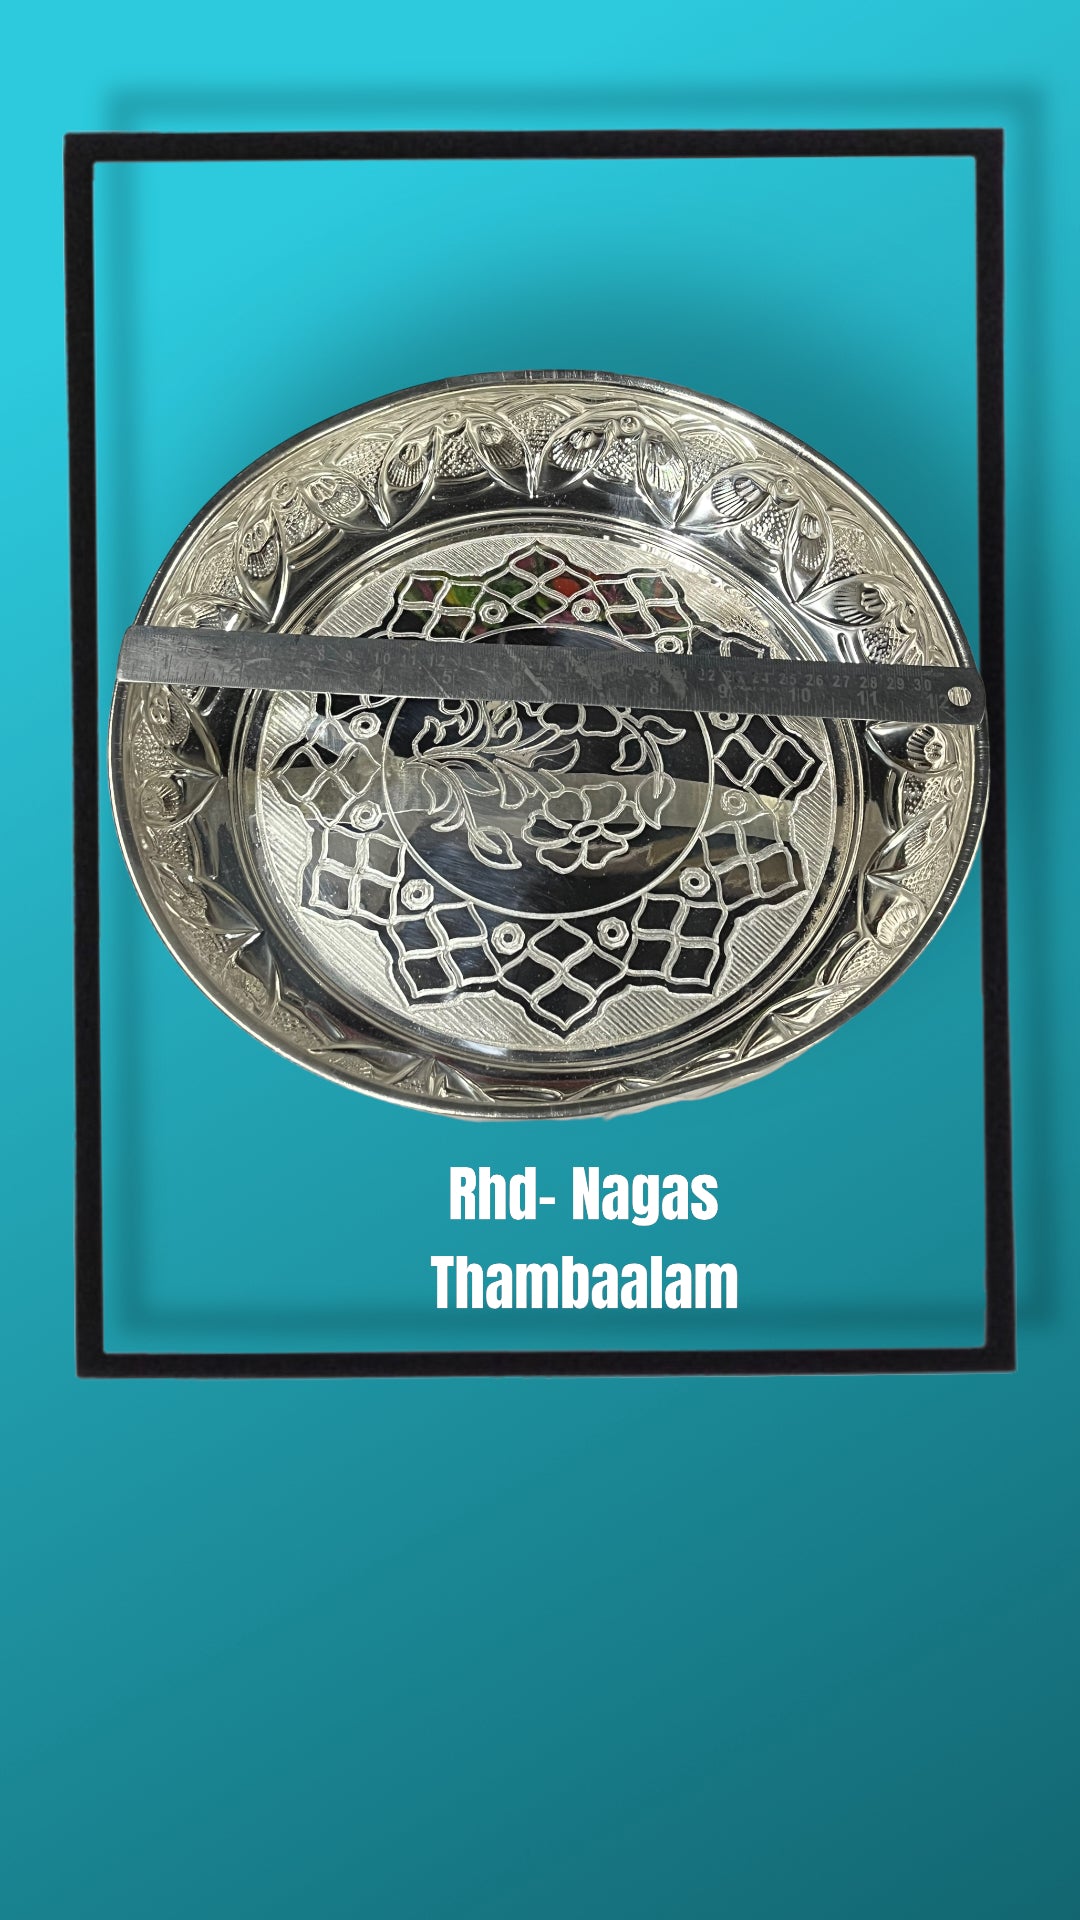 Rhd - Nagas Thambaalam - 12”